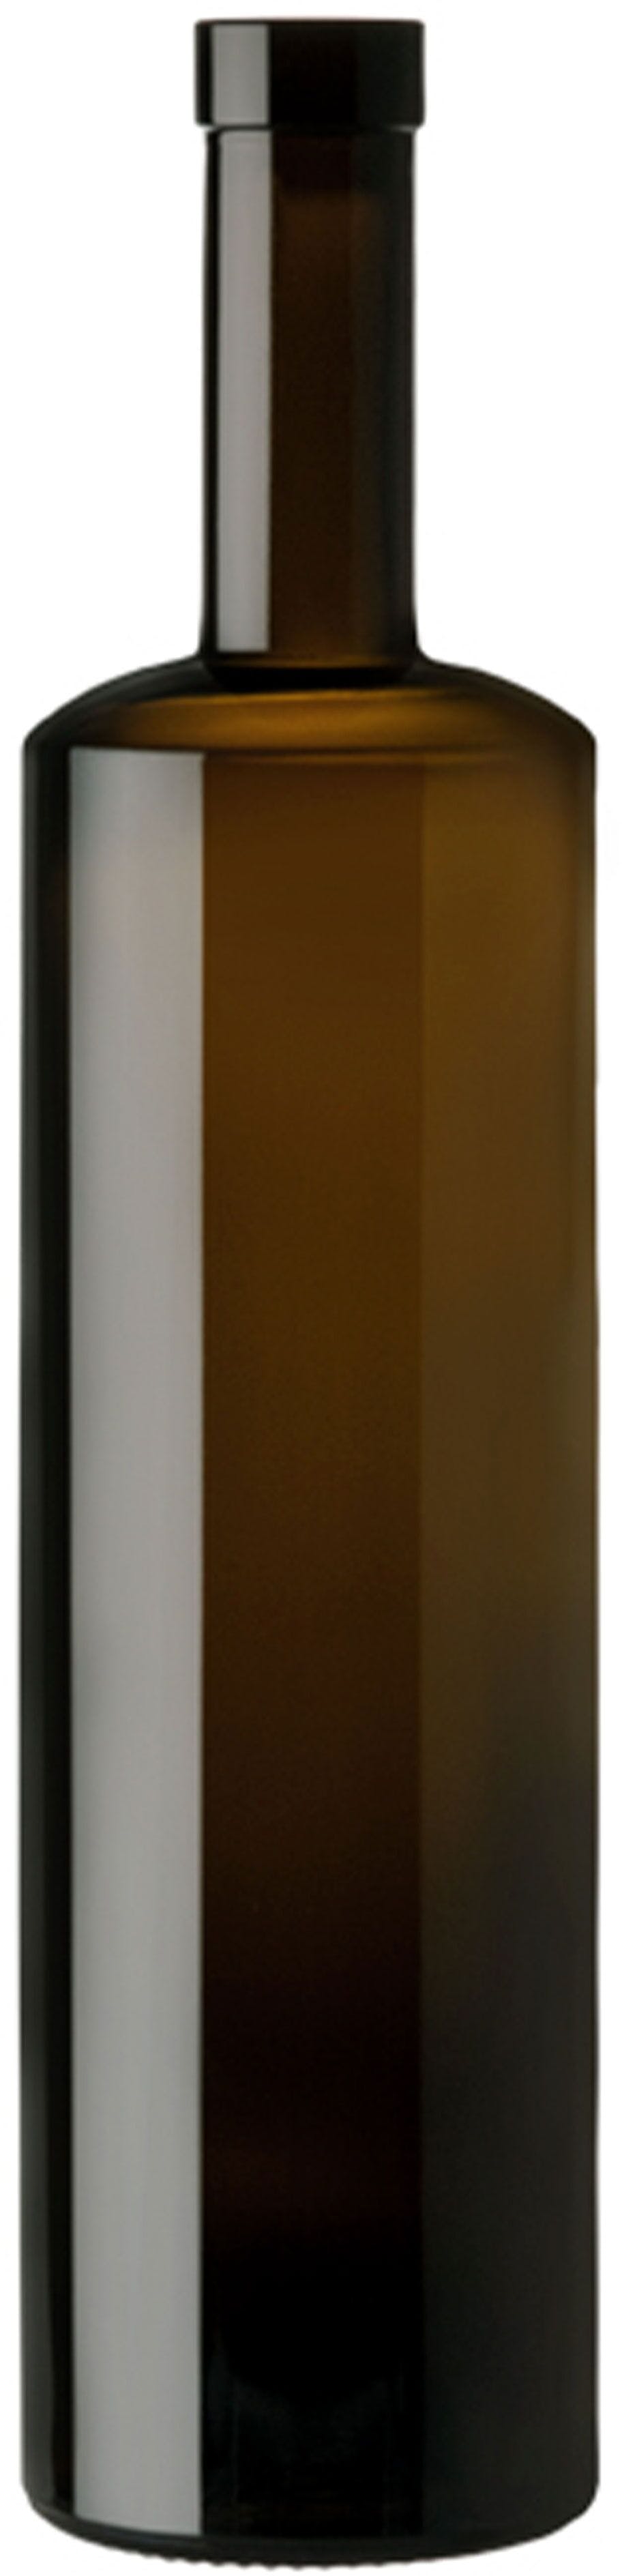 Botella KIRA  WINE 750 ml BG-corcho